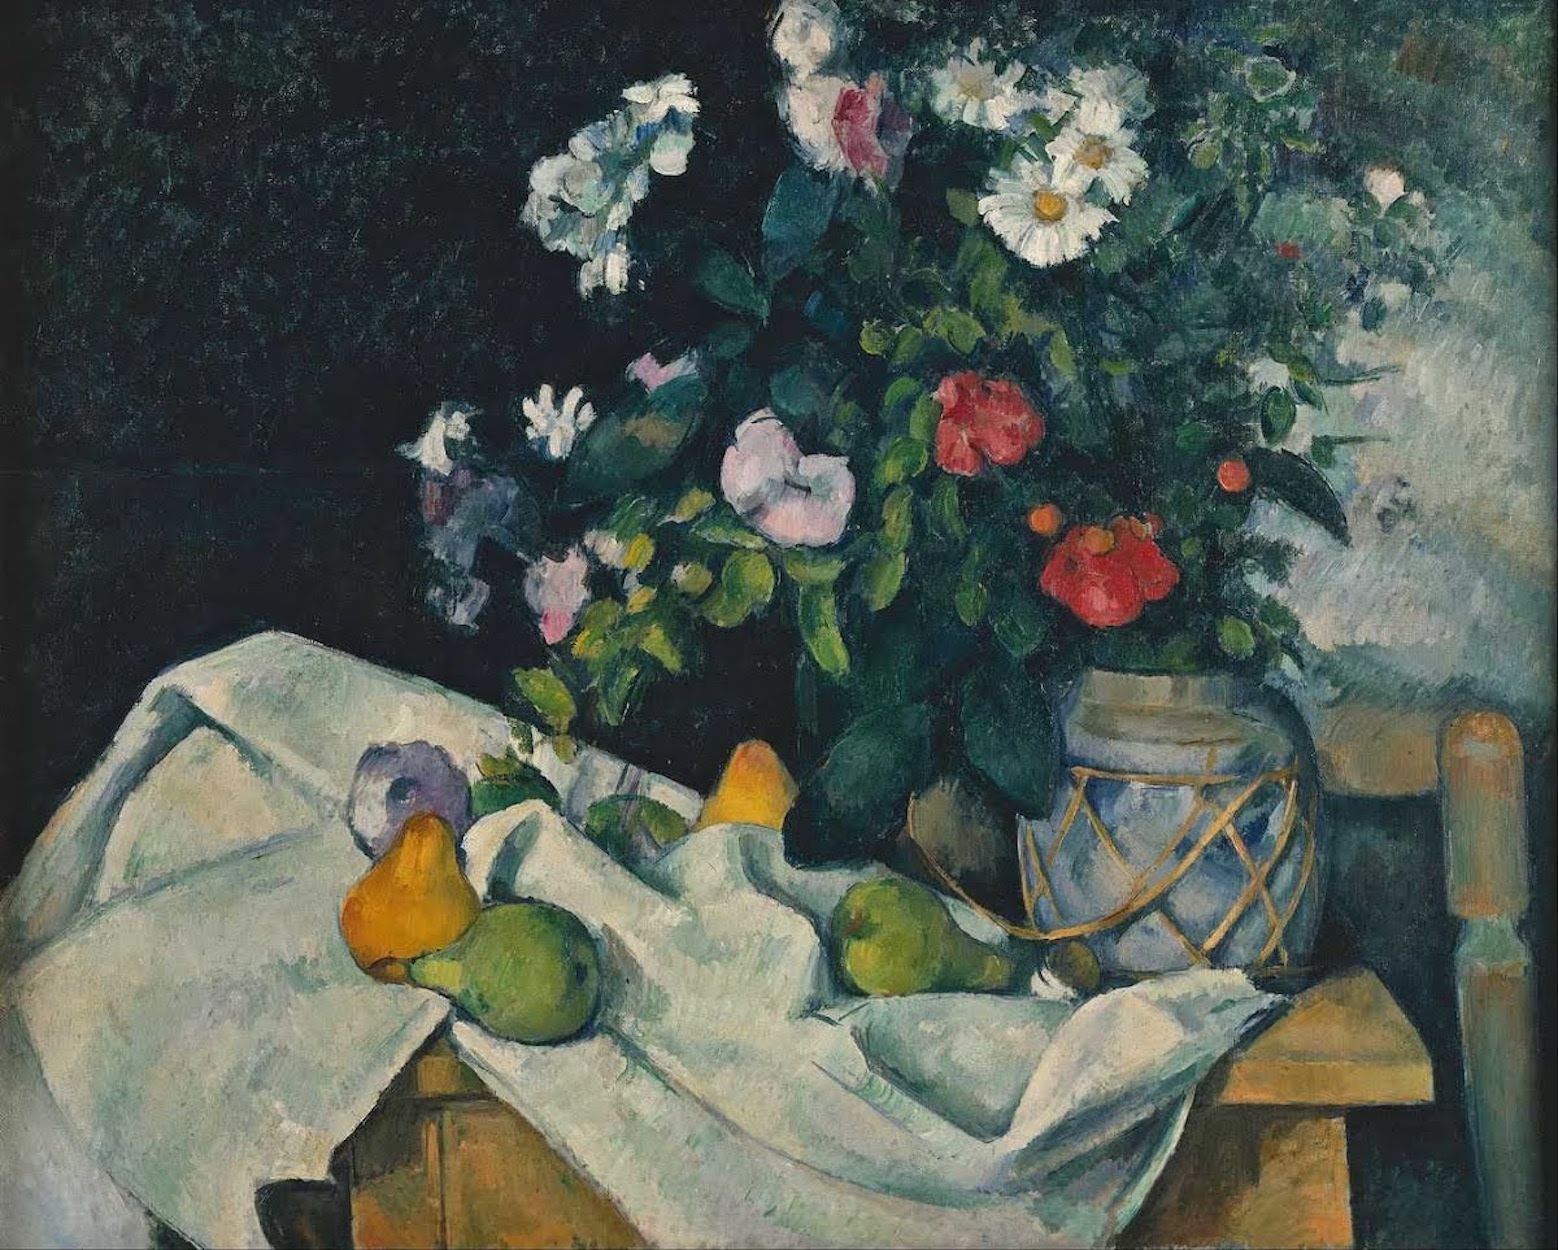 Stilleben med blommor och frukt by Paul Cézanne - ca. 1890 - 82,0 x 65,5 cm 